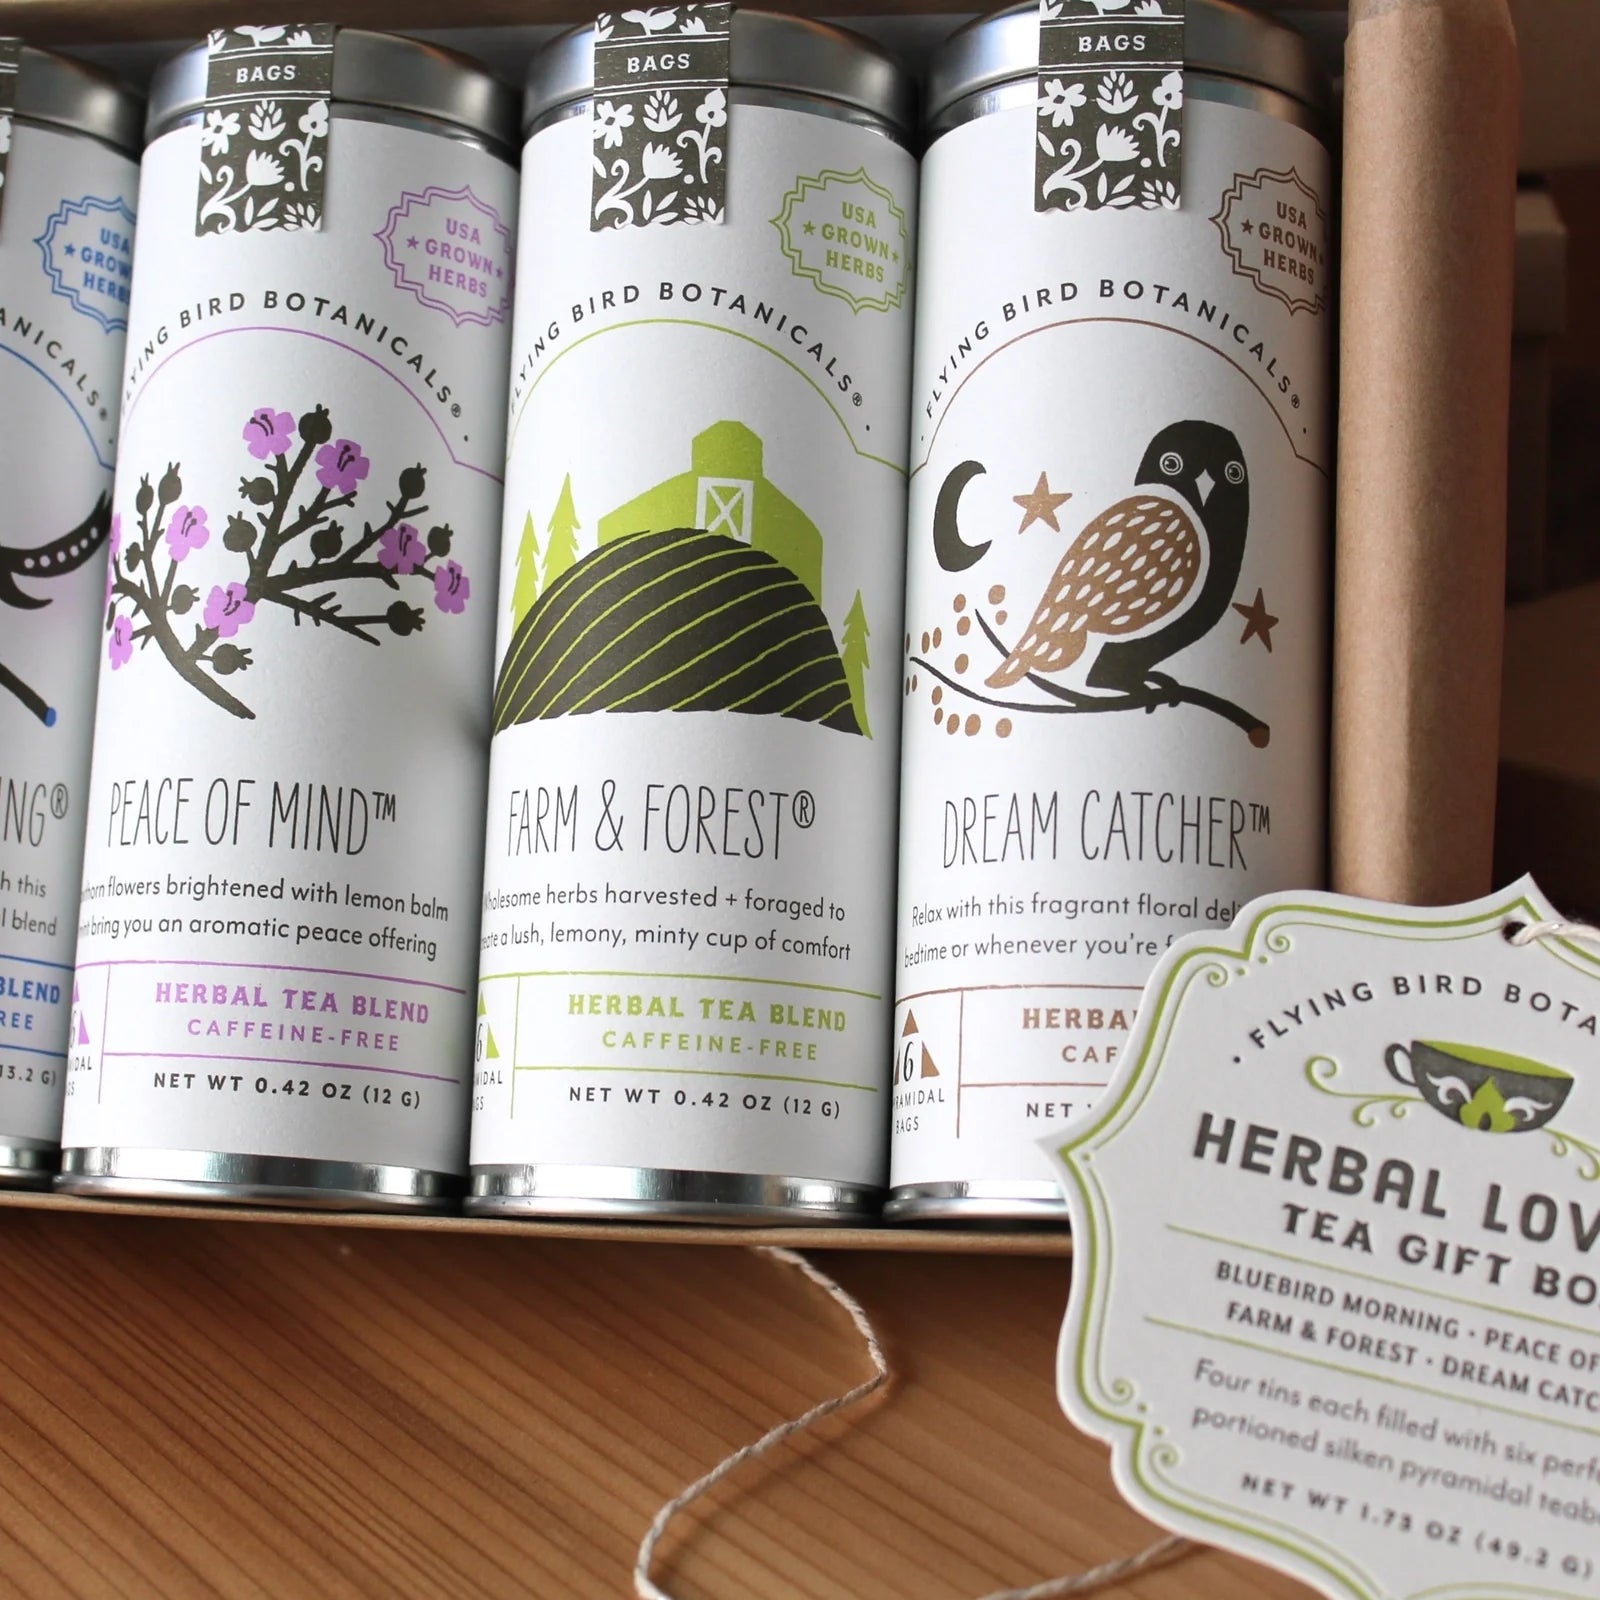 Herbal Tea Lover's Gift Box Set